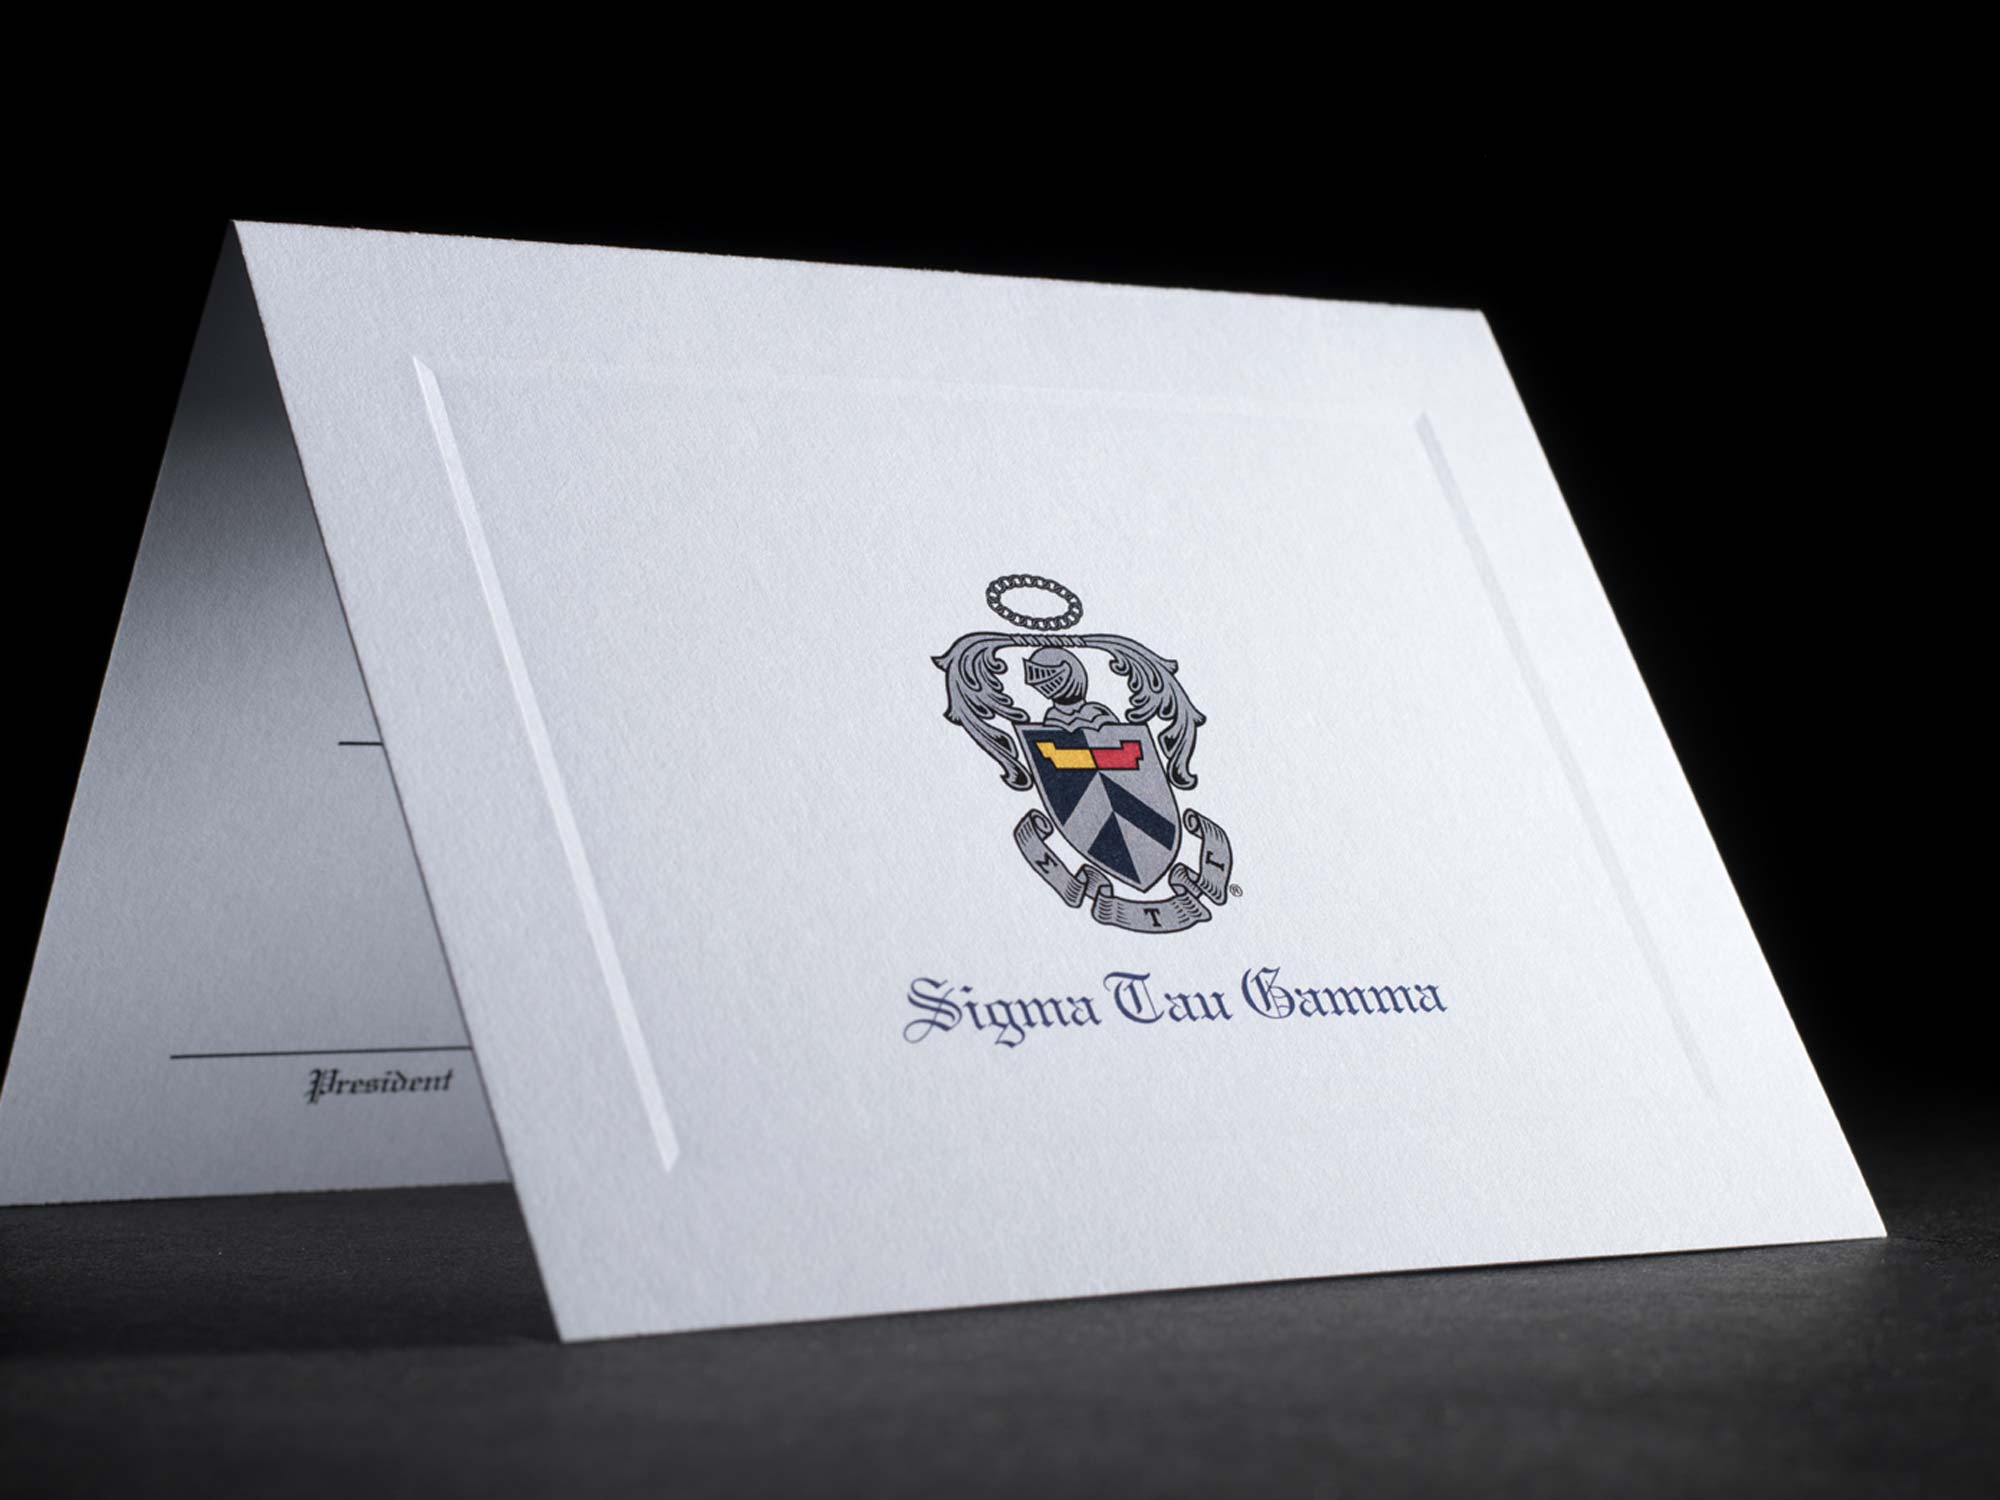 Formal Bid Day Cards Sigma Tau Gamma